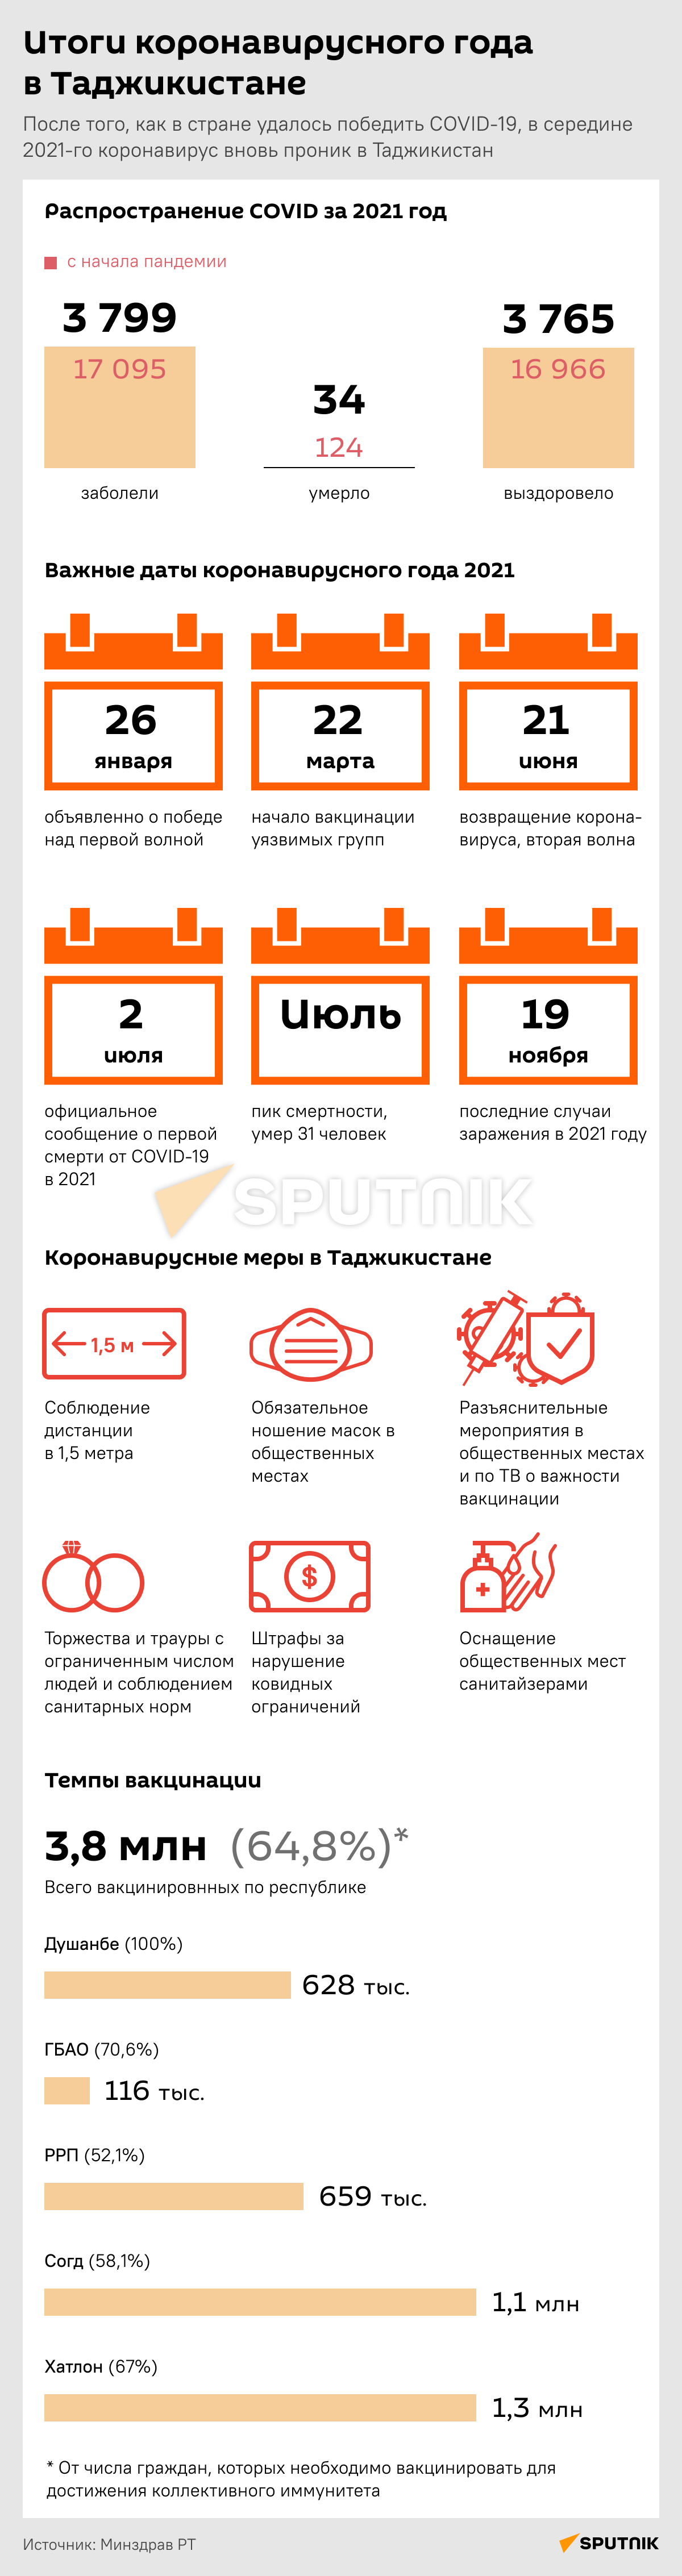 Итоги коронавирусного года в Таджикистане - Sputnik Таджикистан